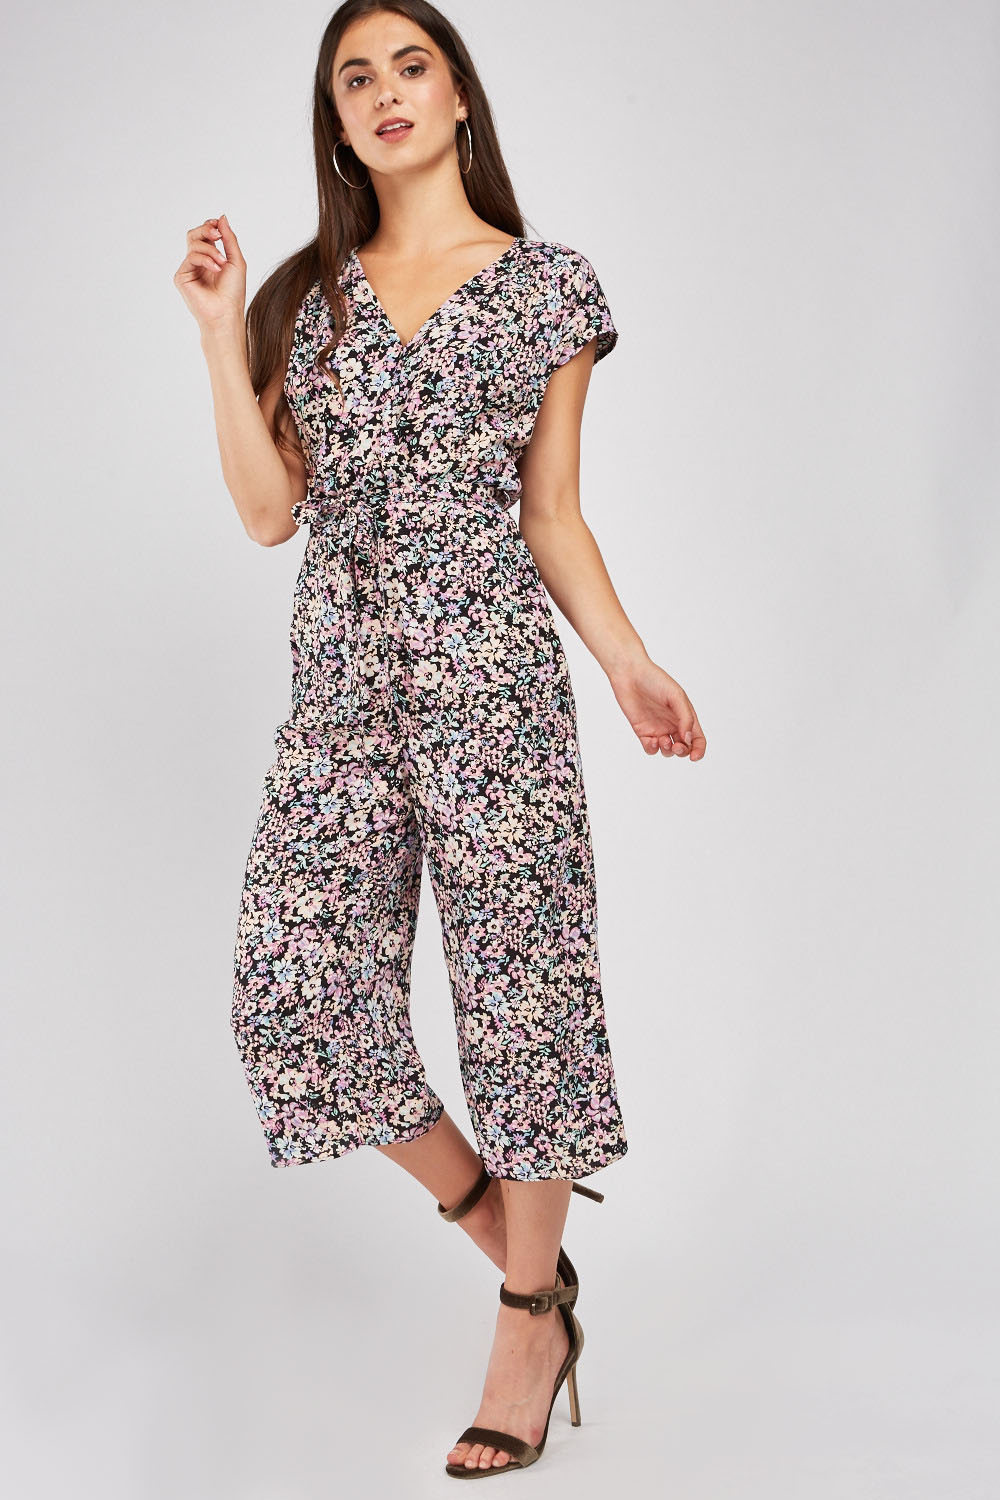 Ditsy Floral Print Wrap Jumpsuit - Just $6